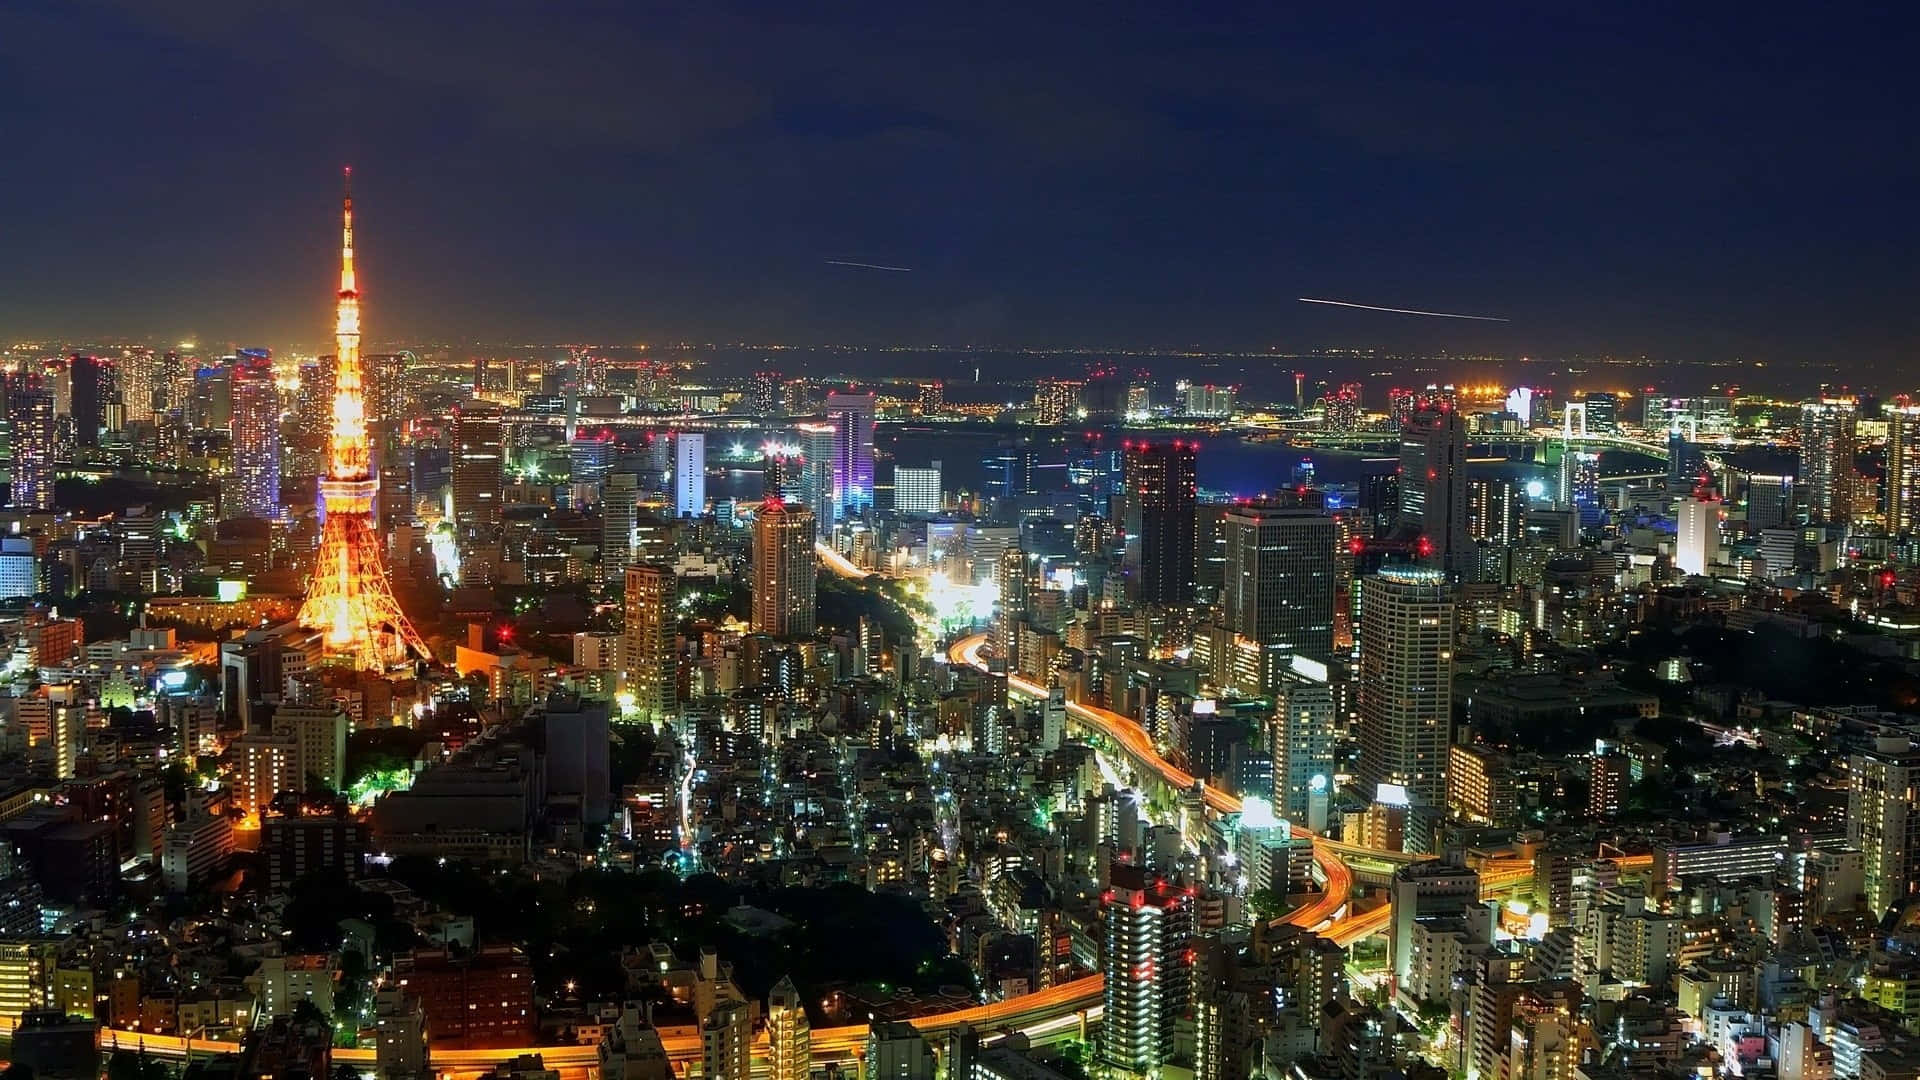 Fondode Pantalla De Tokio: Luces Brillantes De La Ciudad.